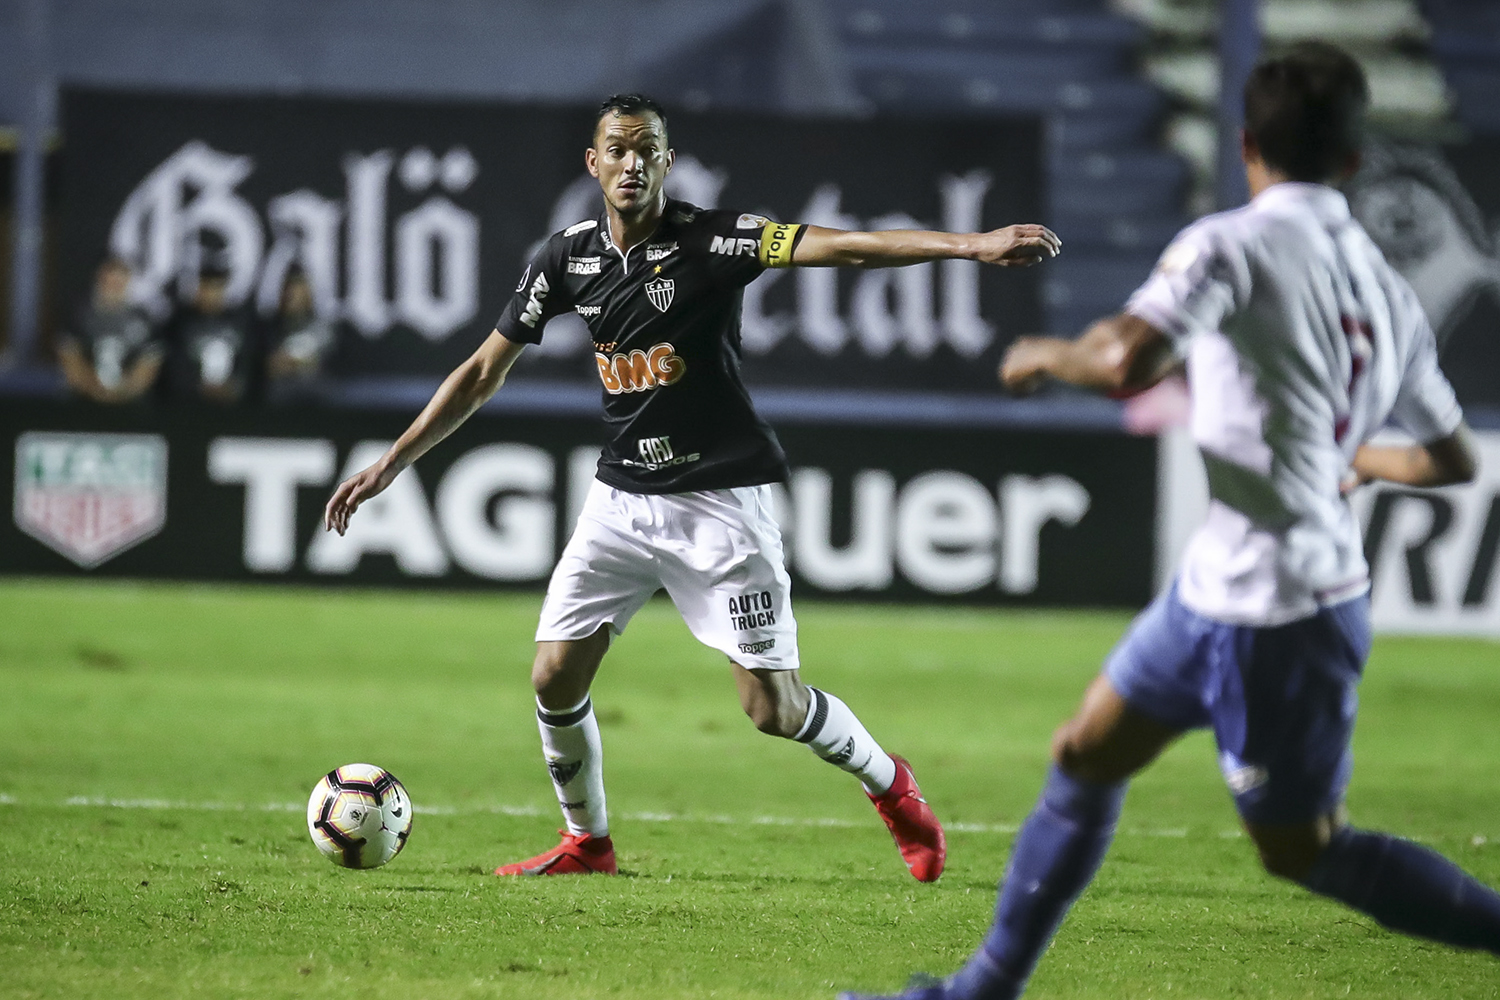 Libertadores: em situação difícil, Atlético-MG quer 'fechar grupo' - VEJA